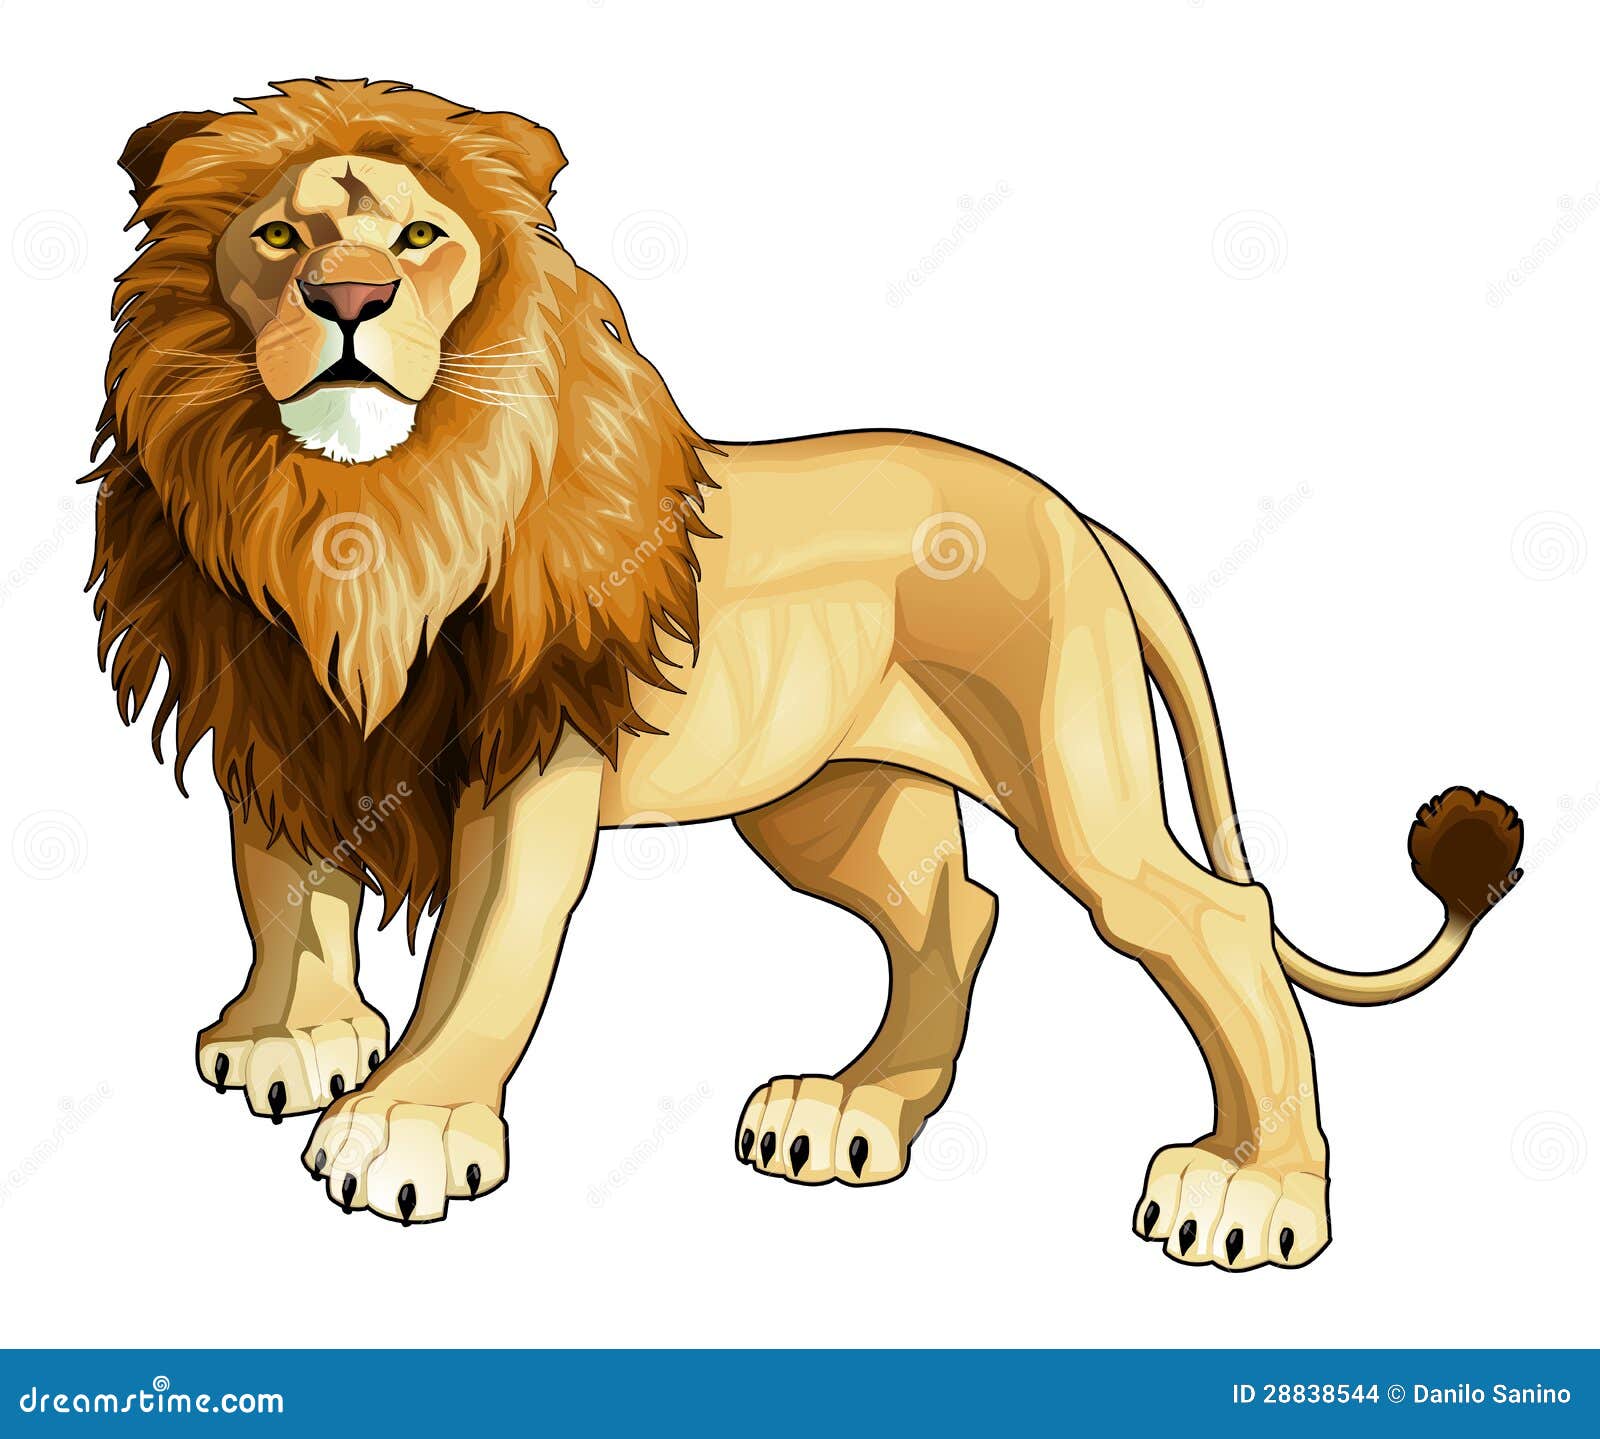 lion king.